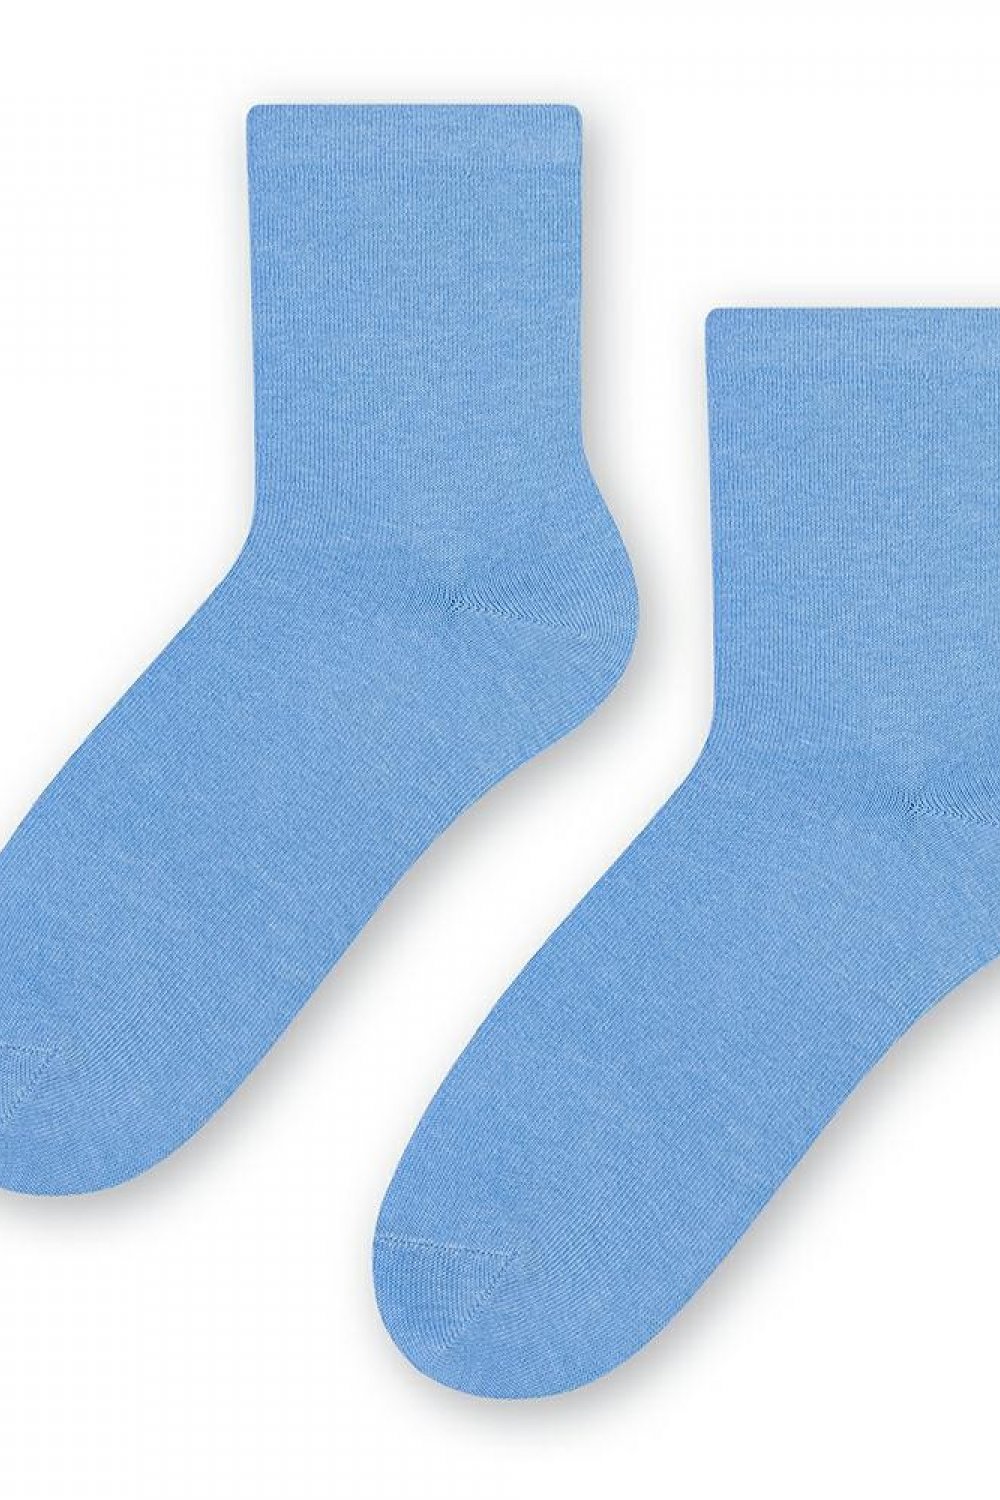 Șosete și ciorapi de damă 037 light blue